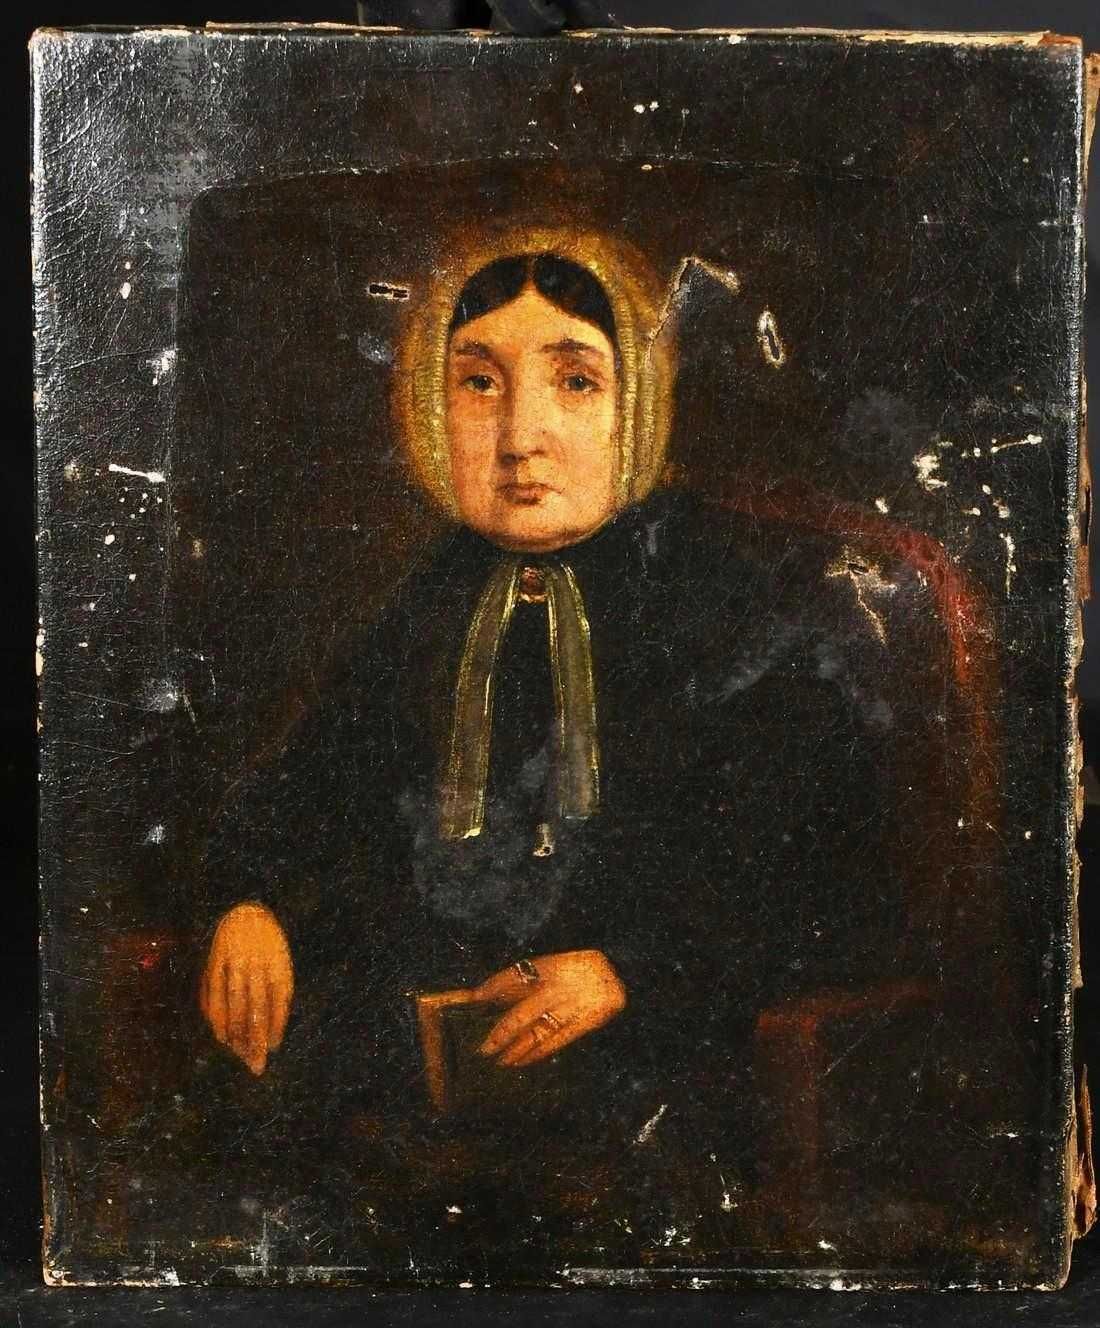 Portret in ulei pe panza inceput de secol XIX